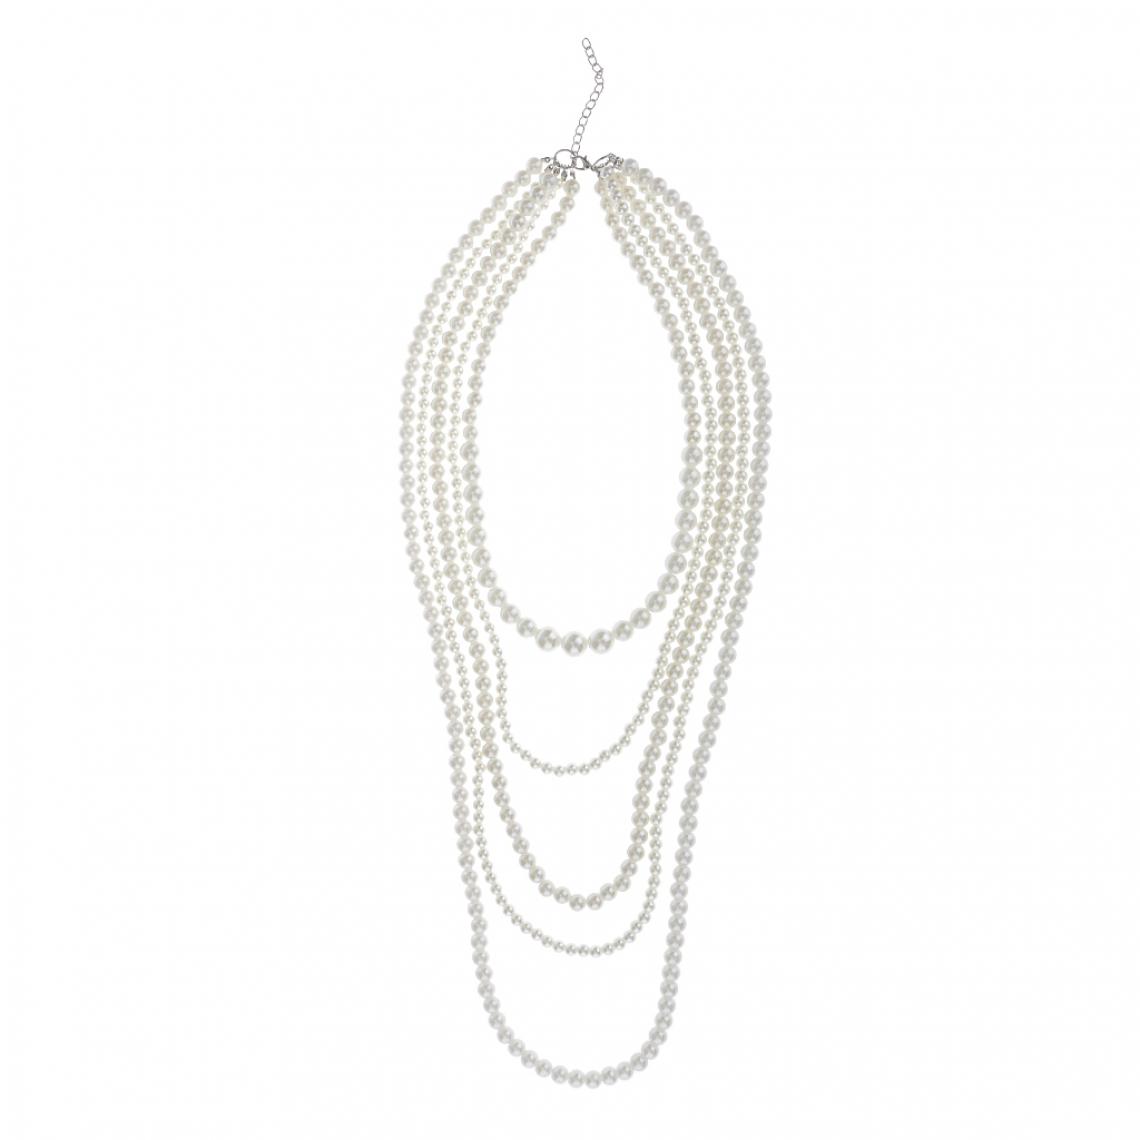 marque generique - Femme Mode Rétro Collier de Perles Imitation Multicouche Bijoux - Perles